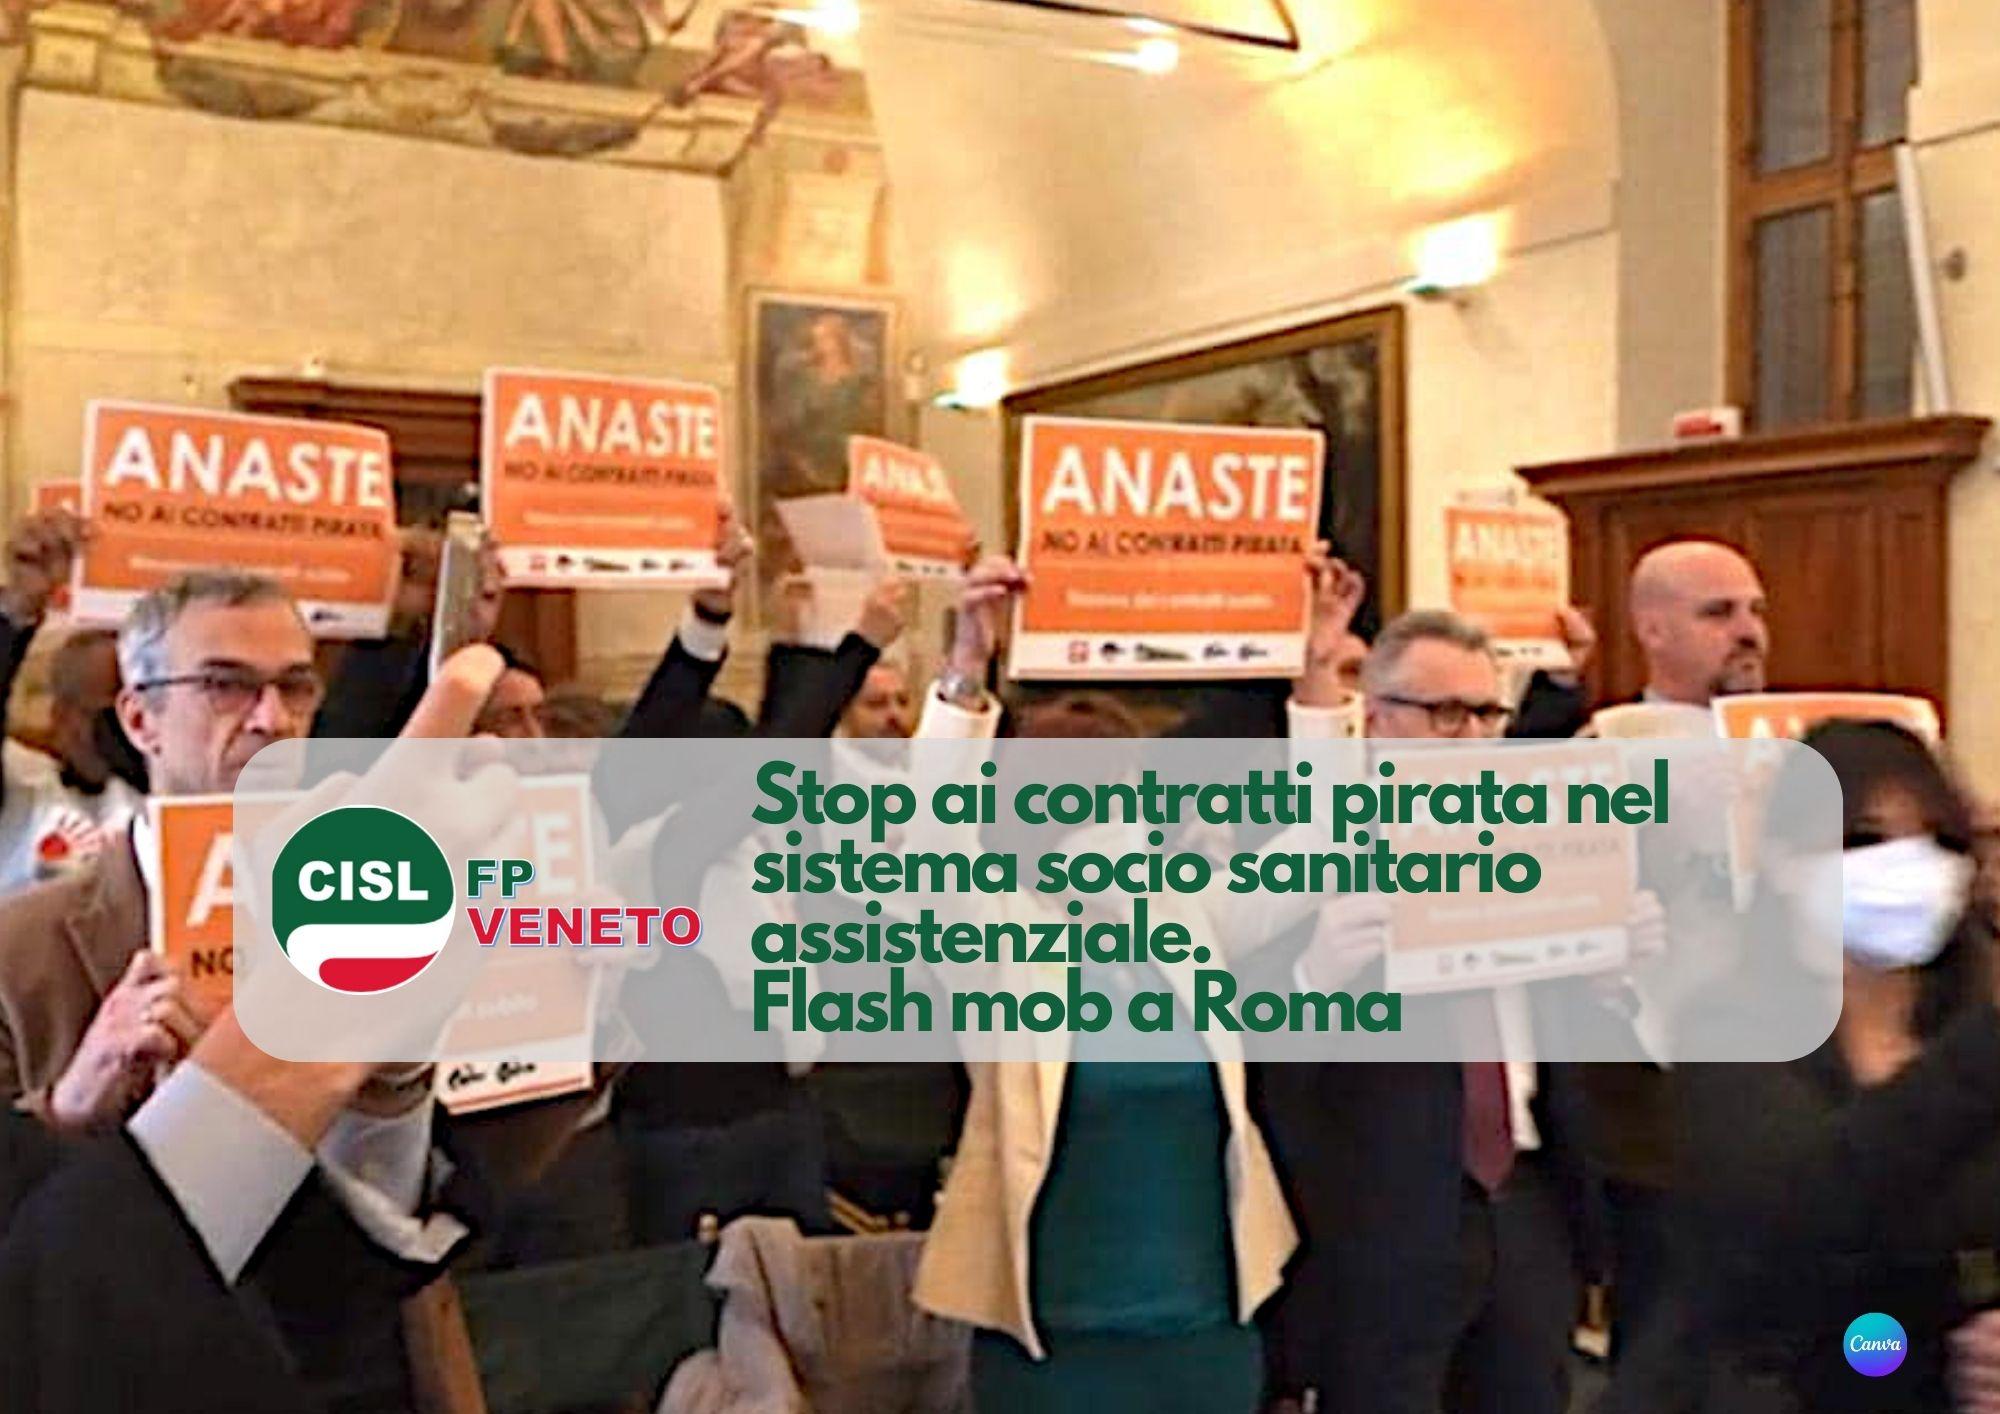 CISL FP Veneto. Stop ai contratti pirata nel sistema socio sanitario assistenziale. Flash mob a Roma